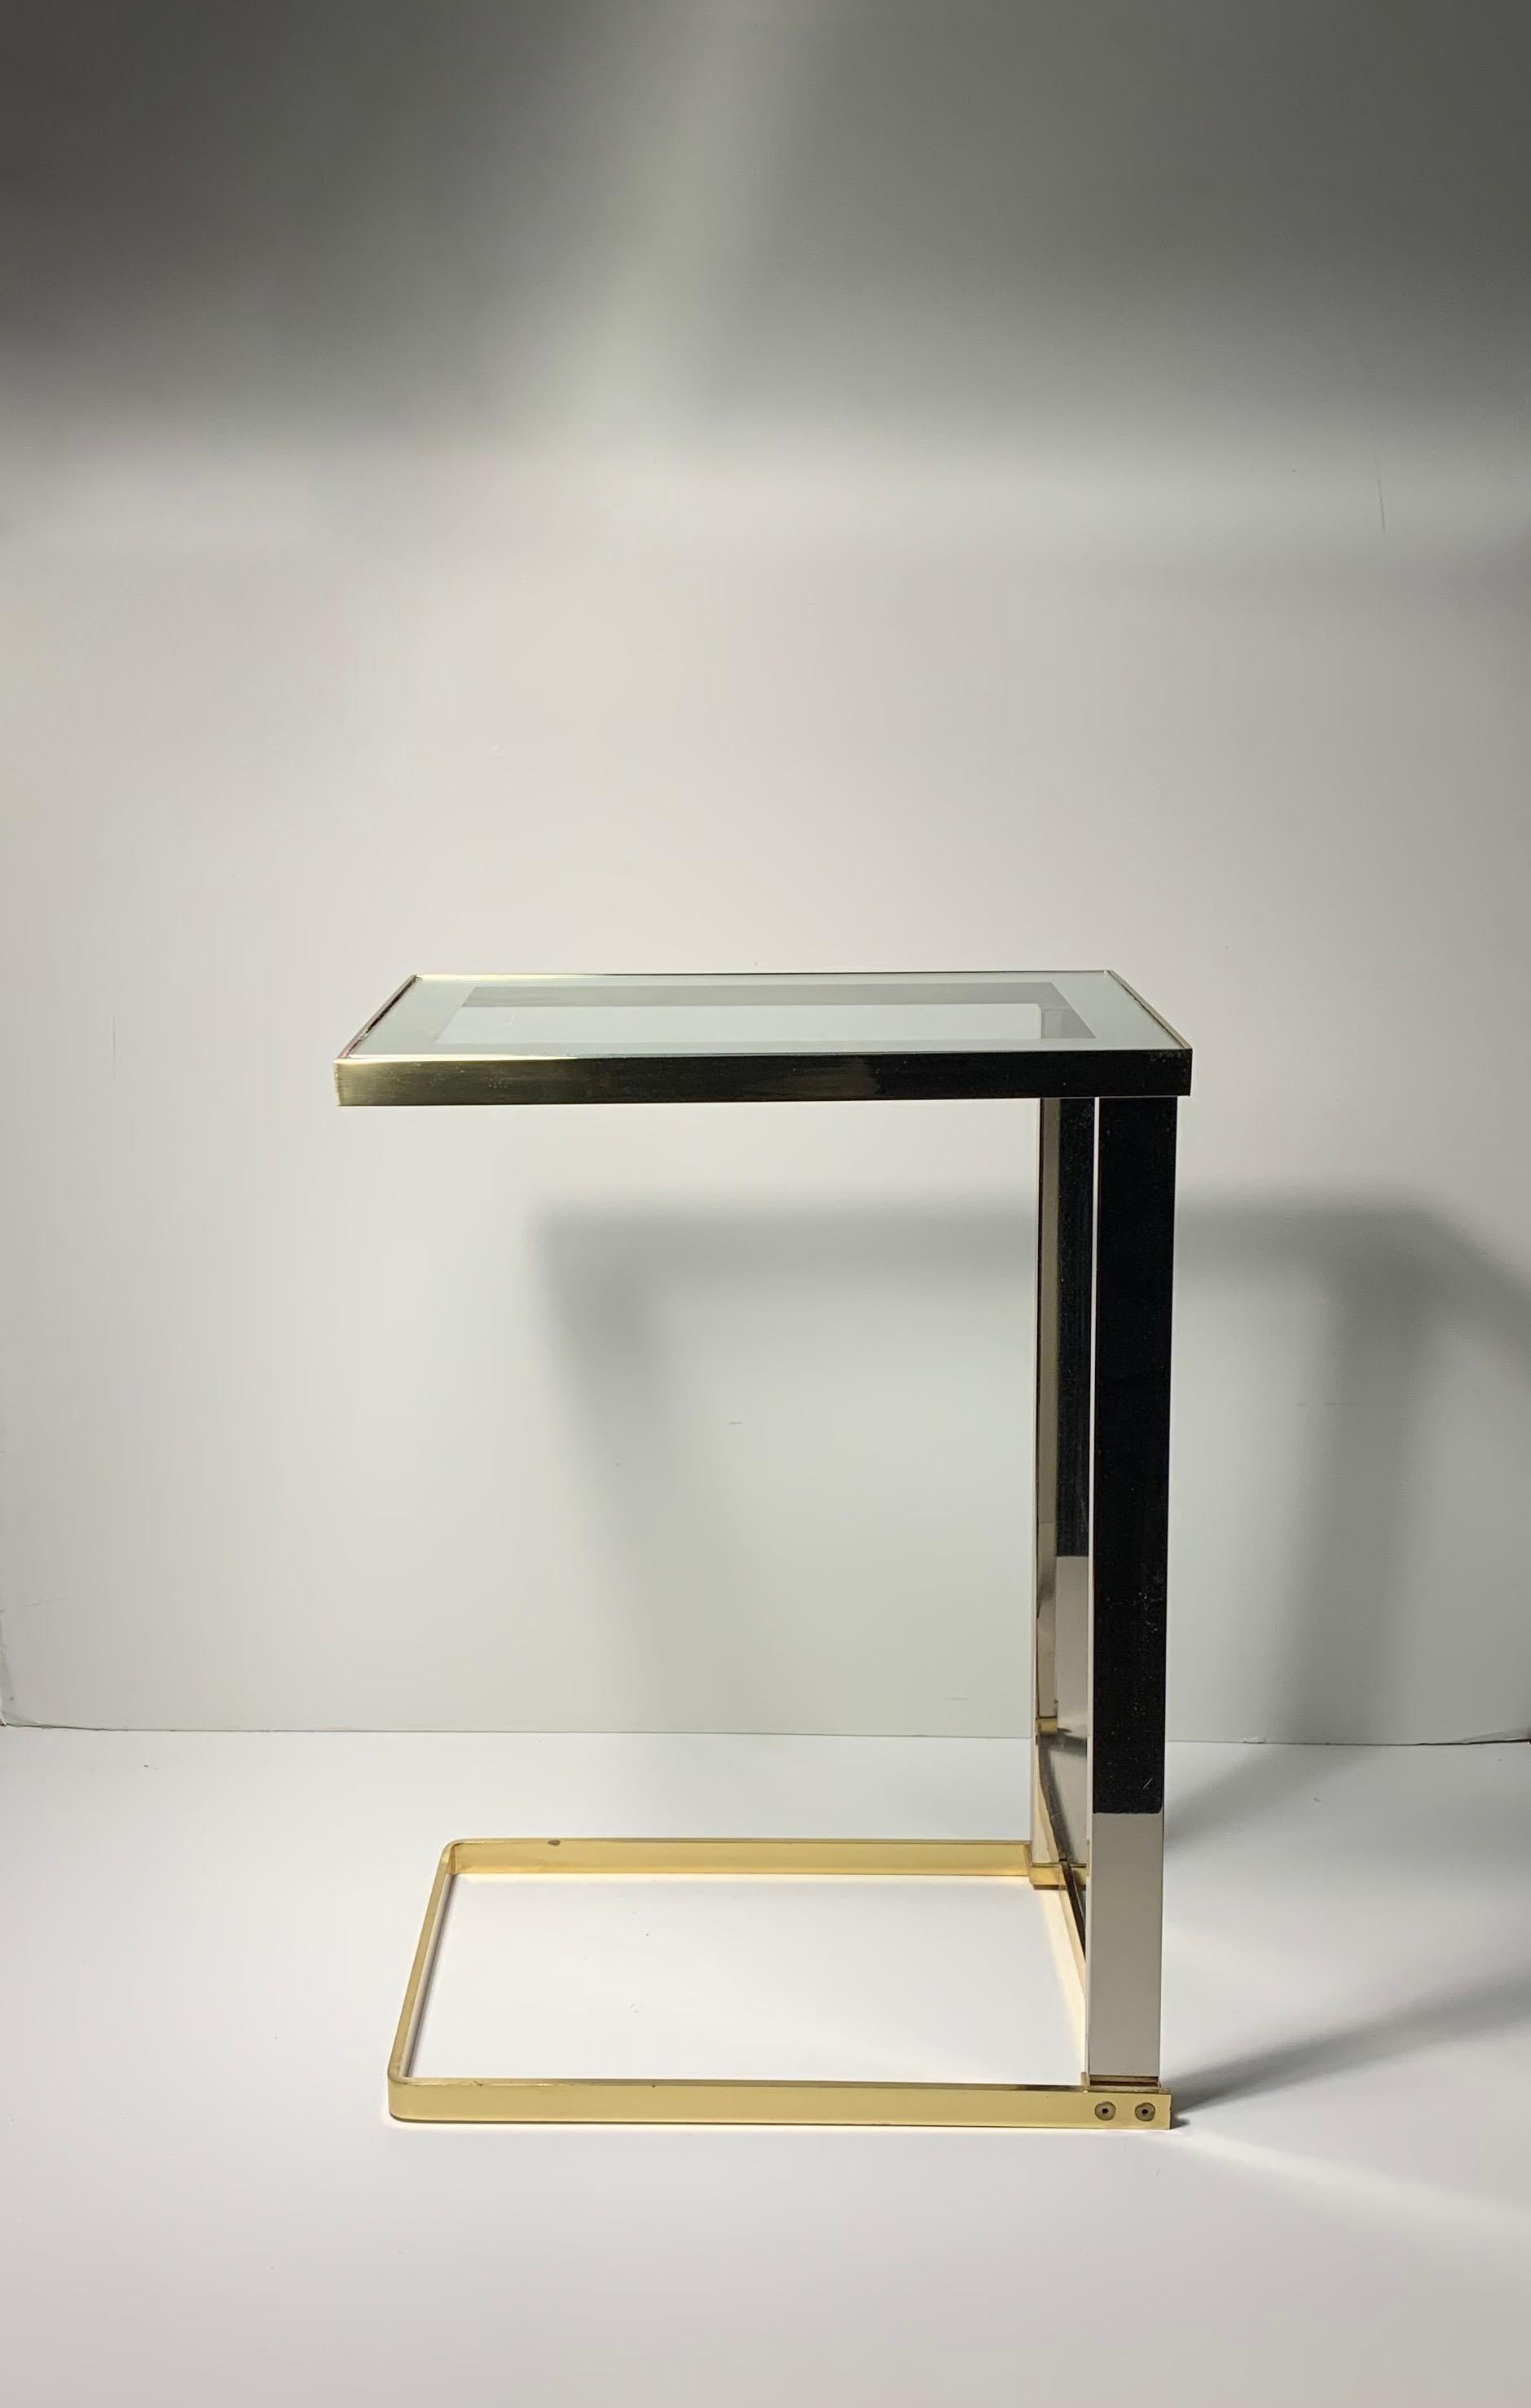 Vintage Postmodern DIA Cantilever Messing und eine dunkle Chrom und Glas Side End Table

Ein interessanter architektonischer Beistelltisch mit einer Glasplatte mit Spiegelrand, die leicht ausgetauscht werden kann.

Nach dem Vorbild von Milo Baughman